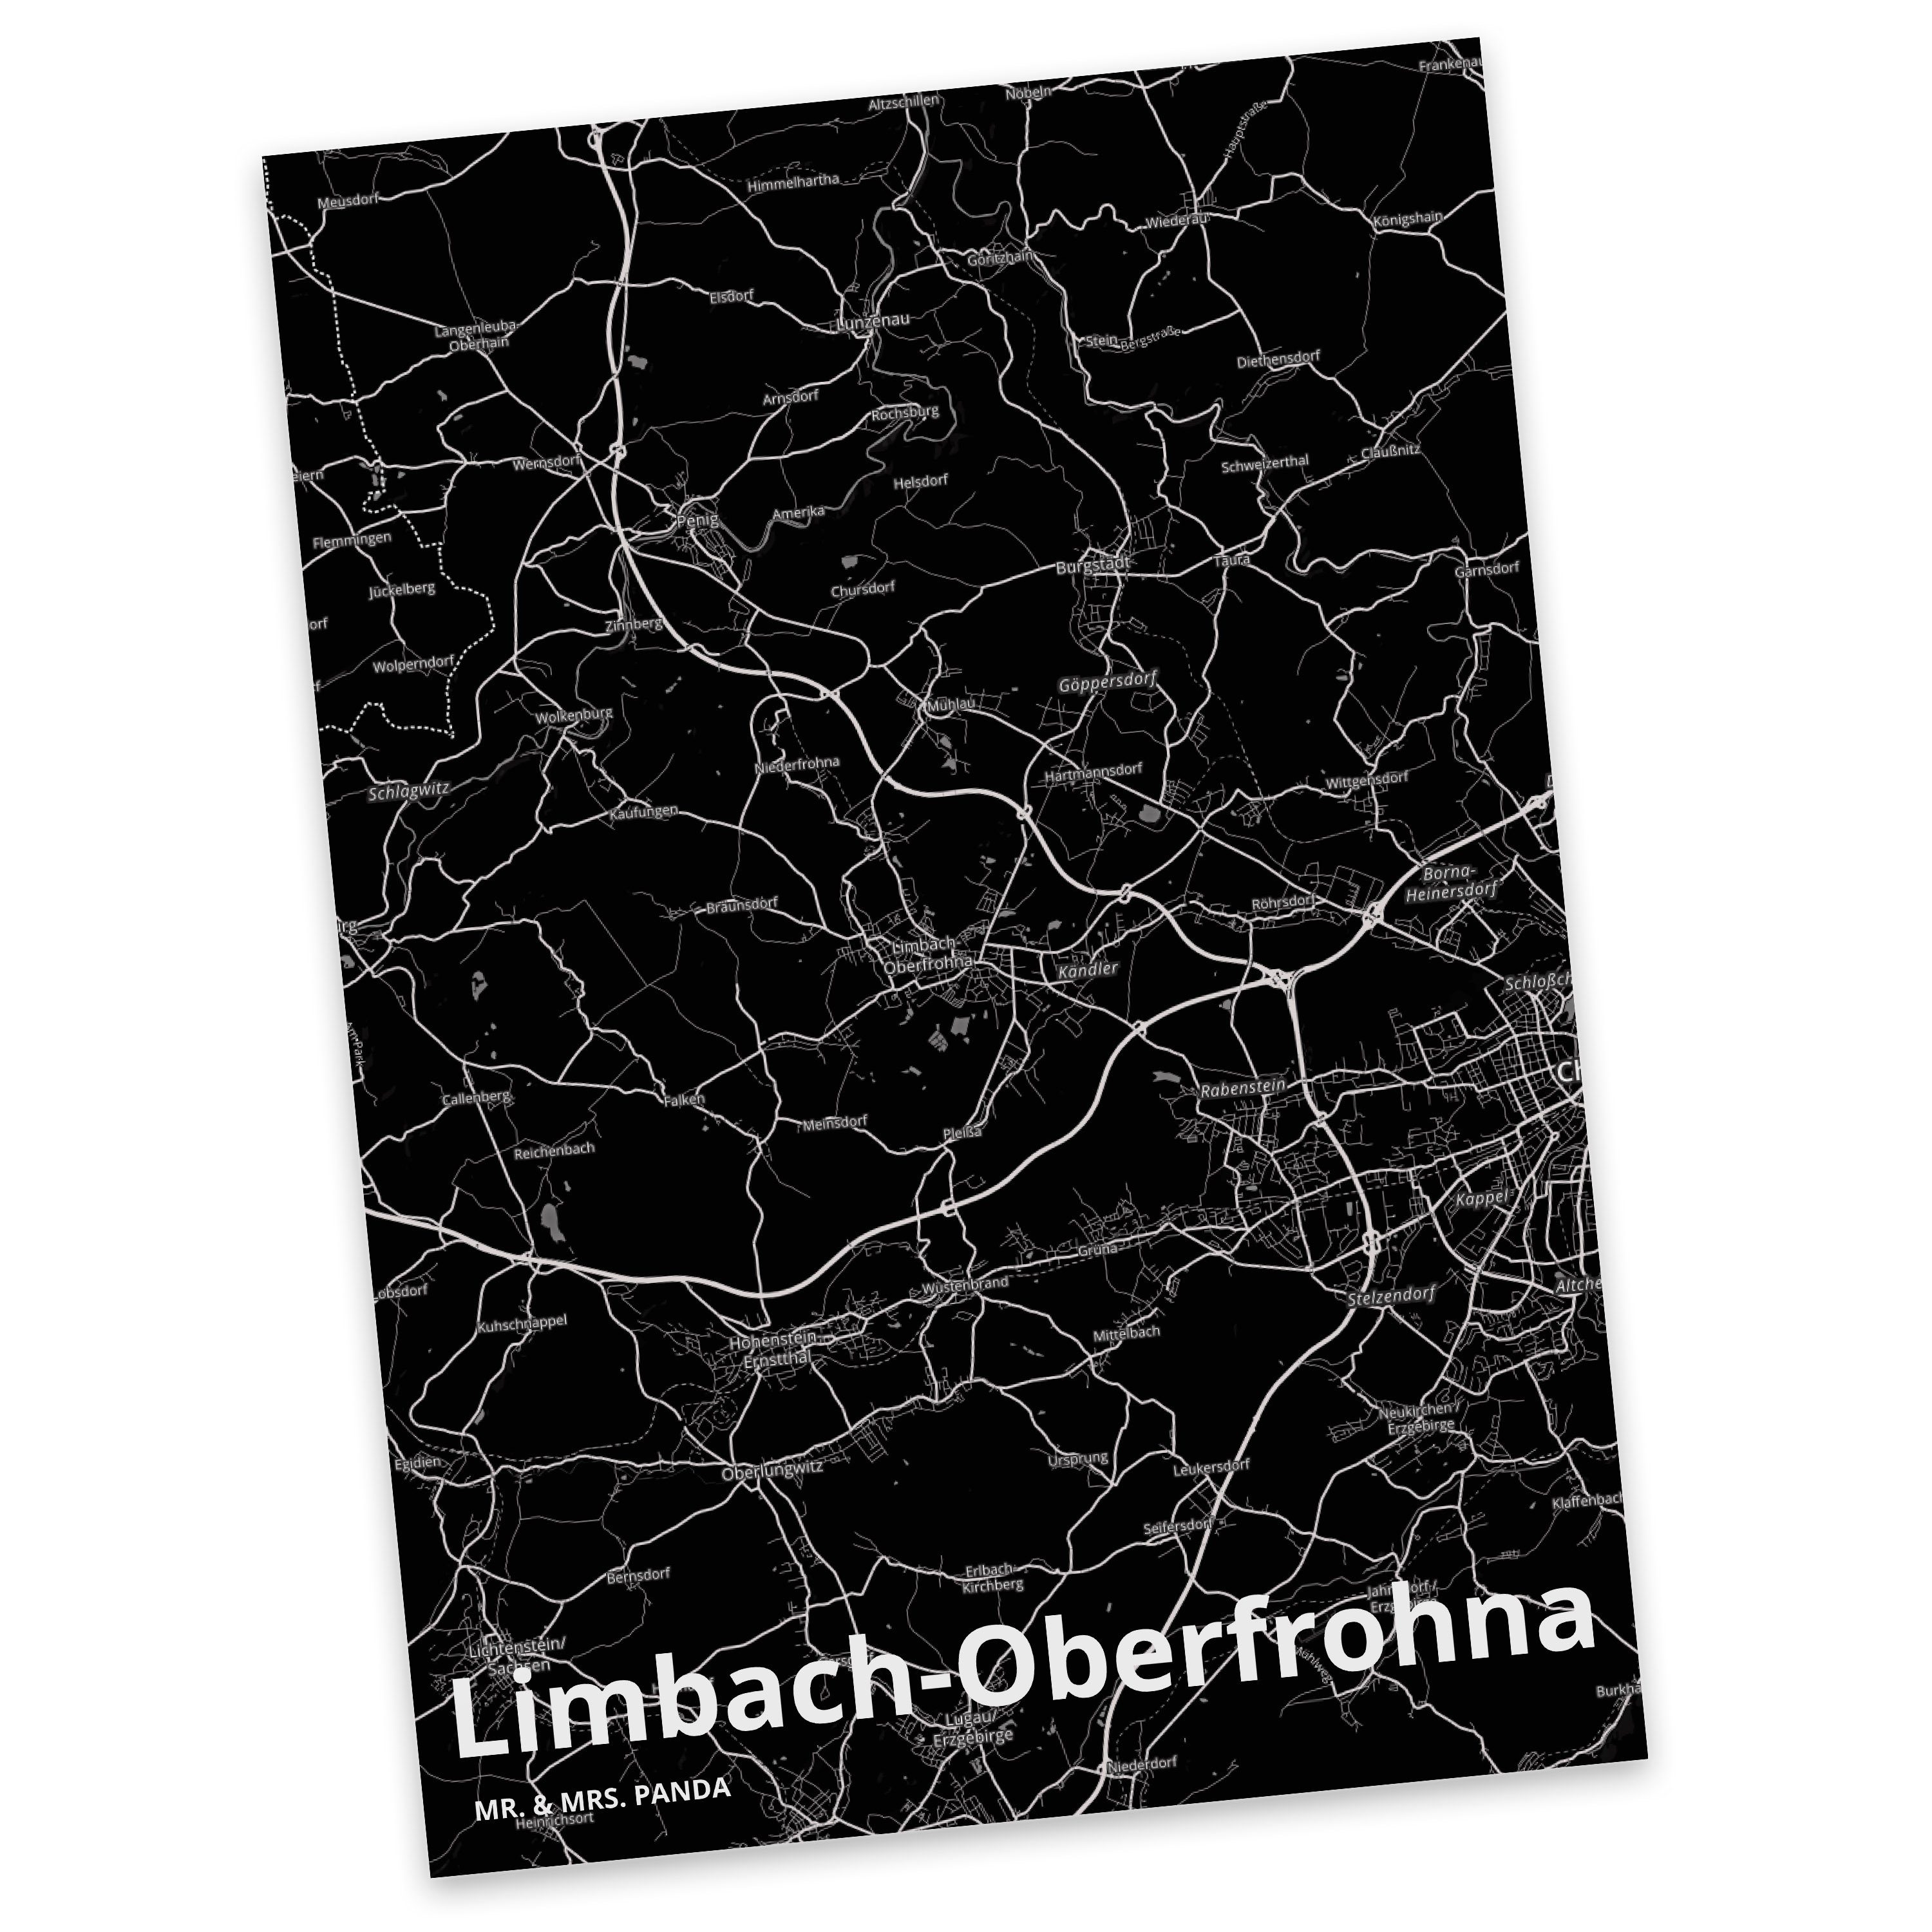 Mr. & Mrs. Panda Postkarte Limbach-Oberfrohna - Geschenk, Stadt Dorf Karte Landkarte Map Stadtpl